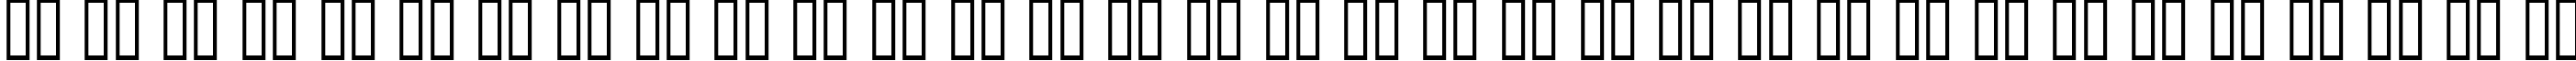 Пример написания русского алфавита шрифтом Morse Kode